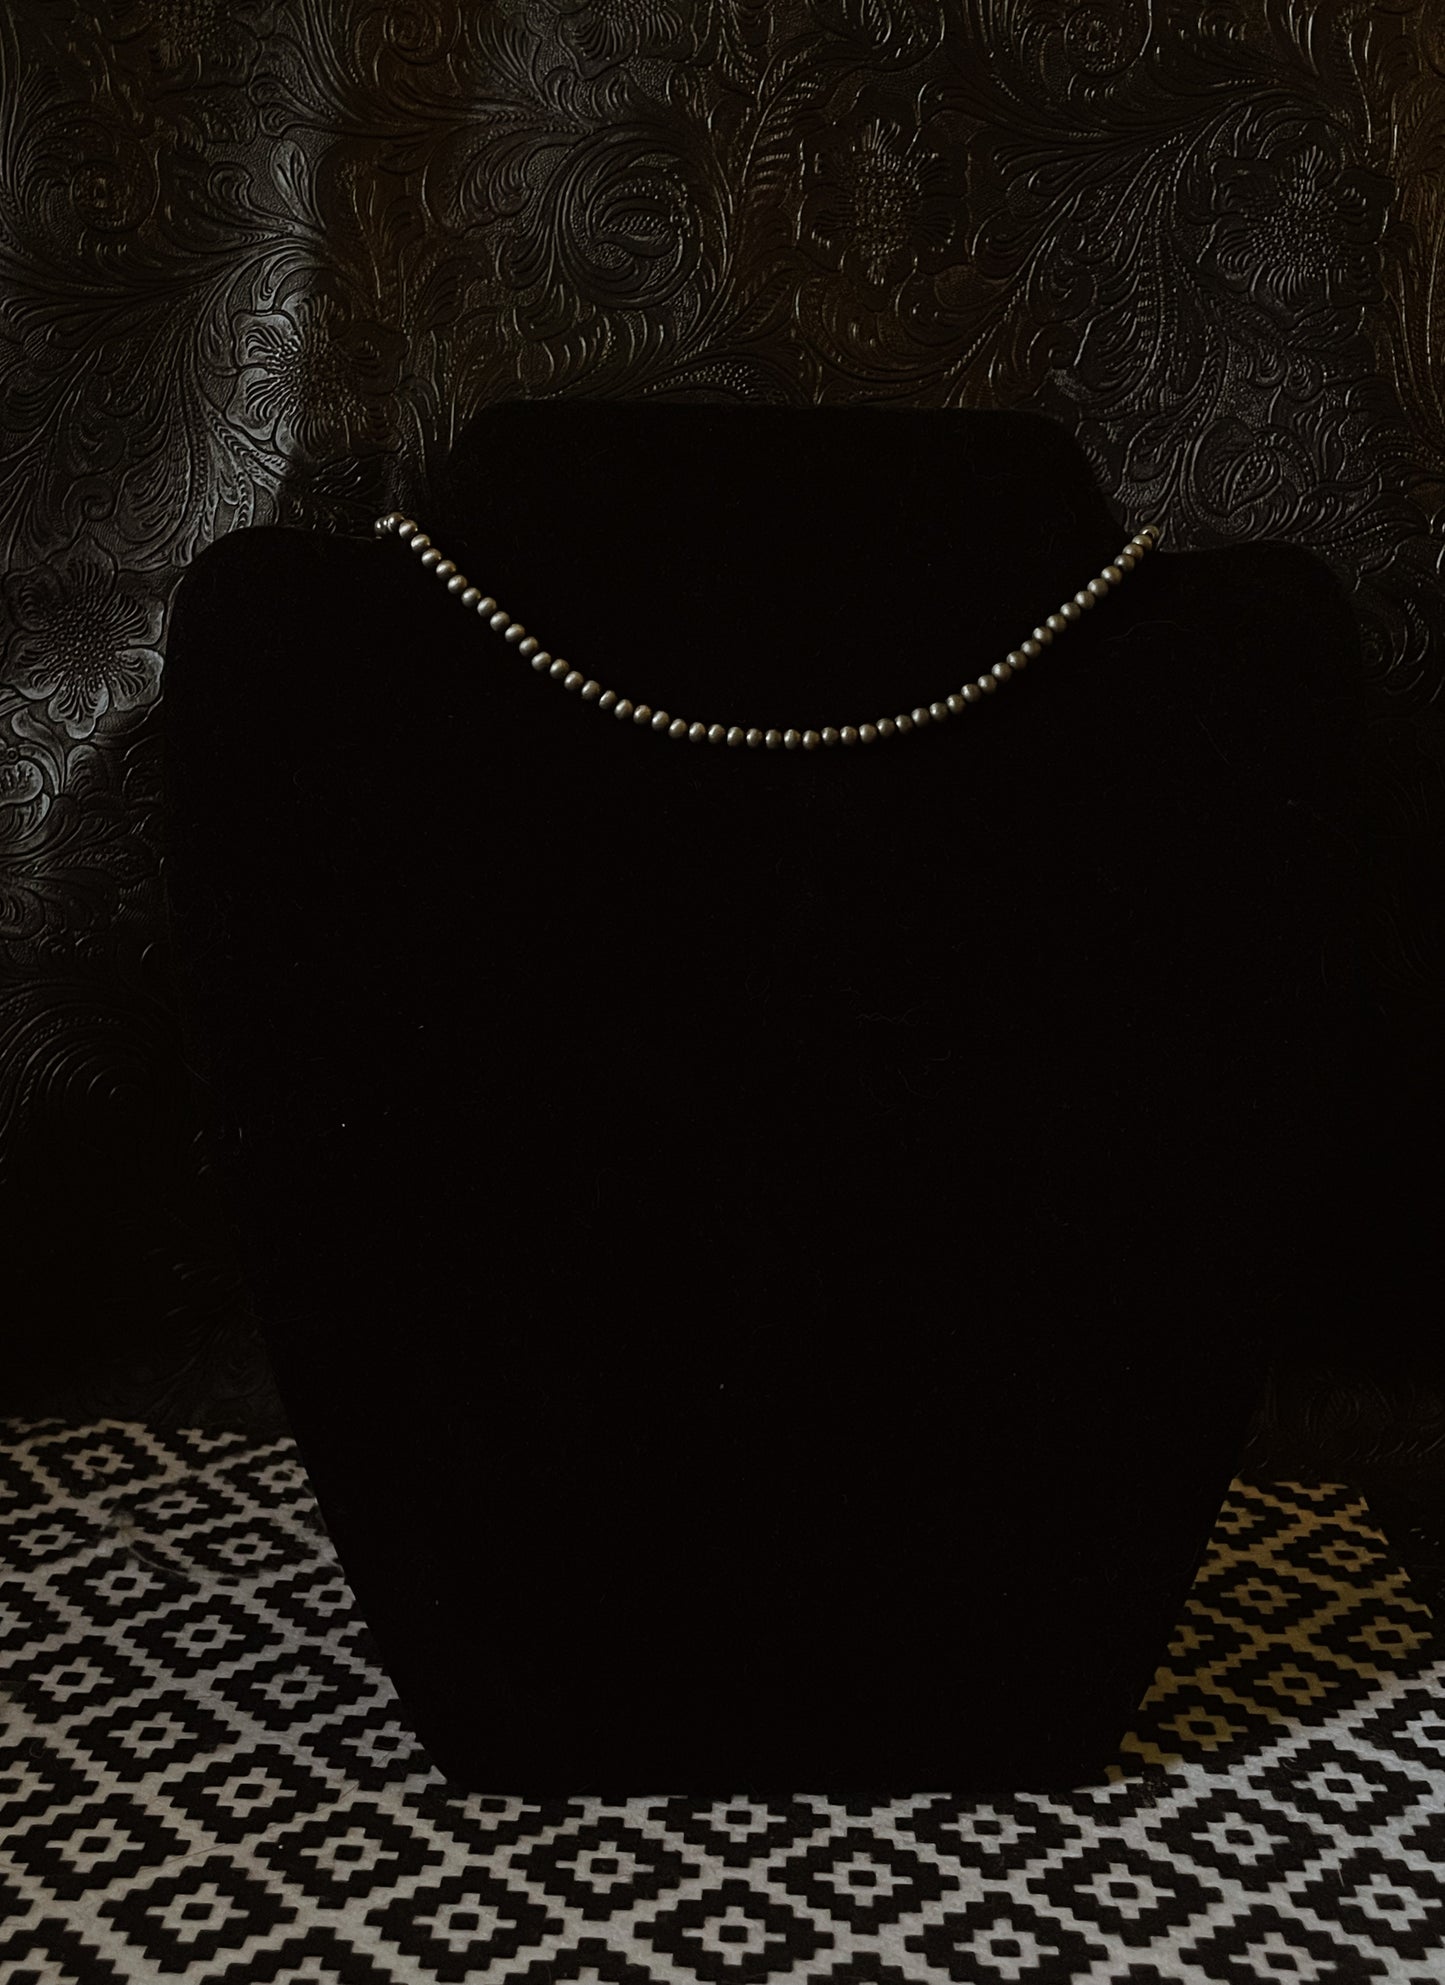 Navajo pearl necklace